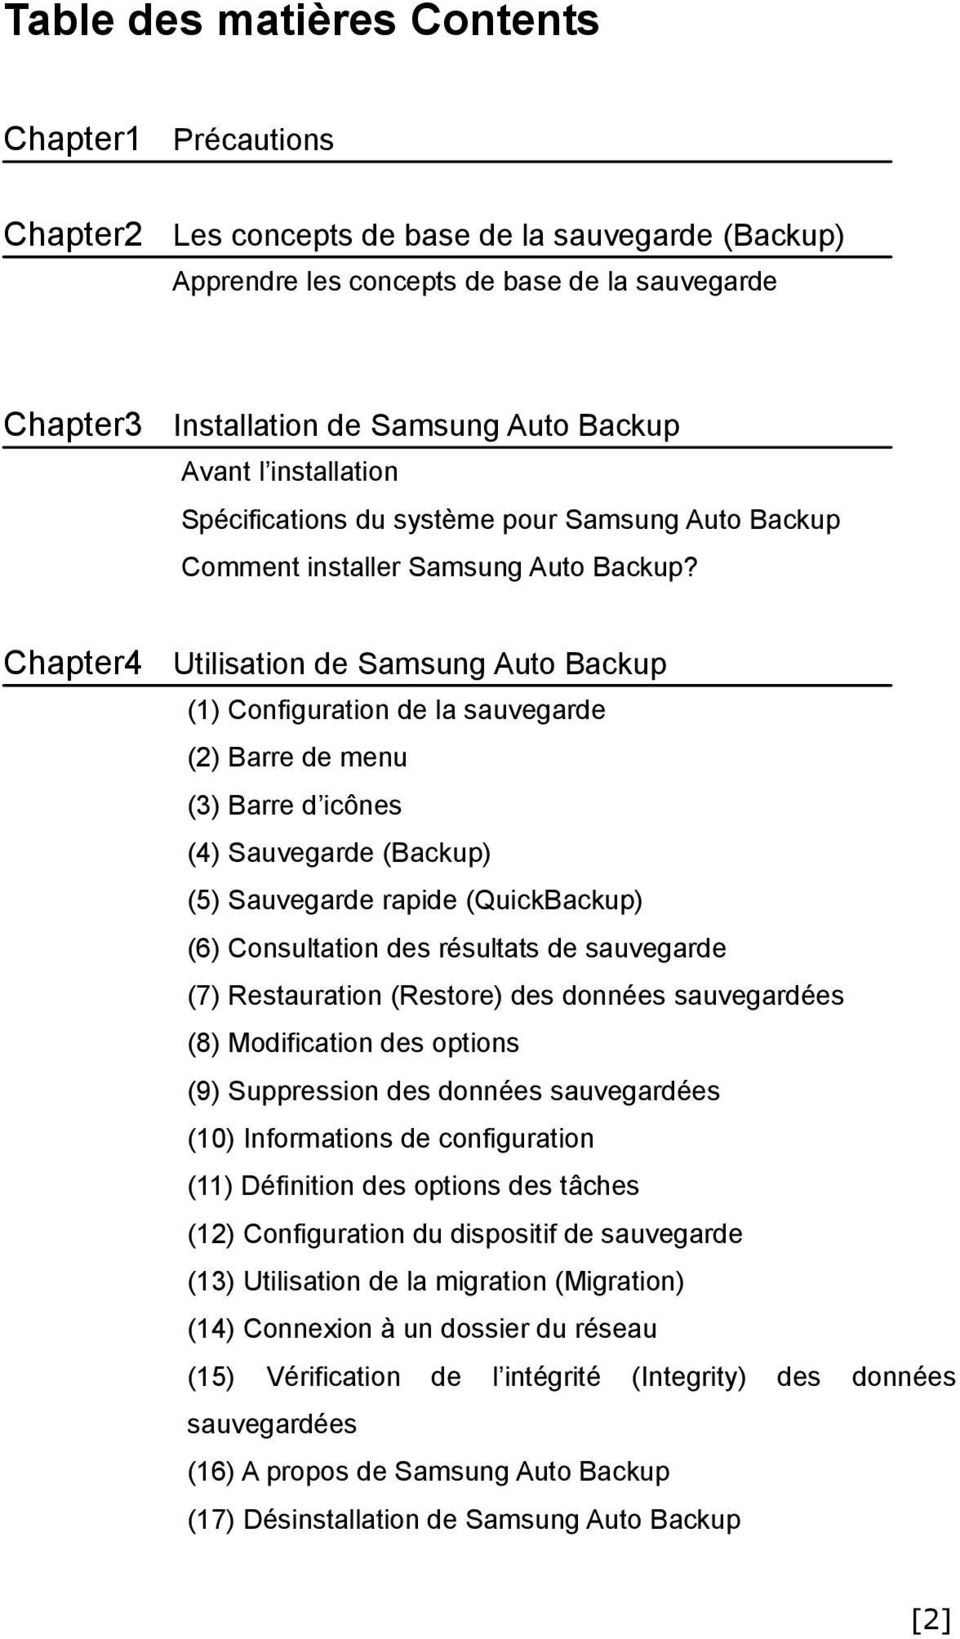 Chapter4 Utilisation de Samsung Auto Backup (1) Configuration de la sauvegarde (2) Barre de menu (3) Barre d icônes (4) Sauvegarde (Backup) (5) Sauvegarde rapide (QuickBackup) (6) Consultation des